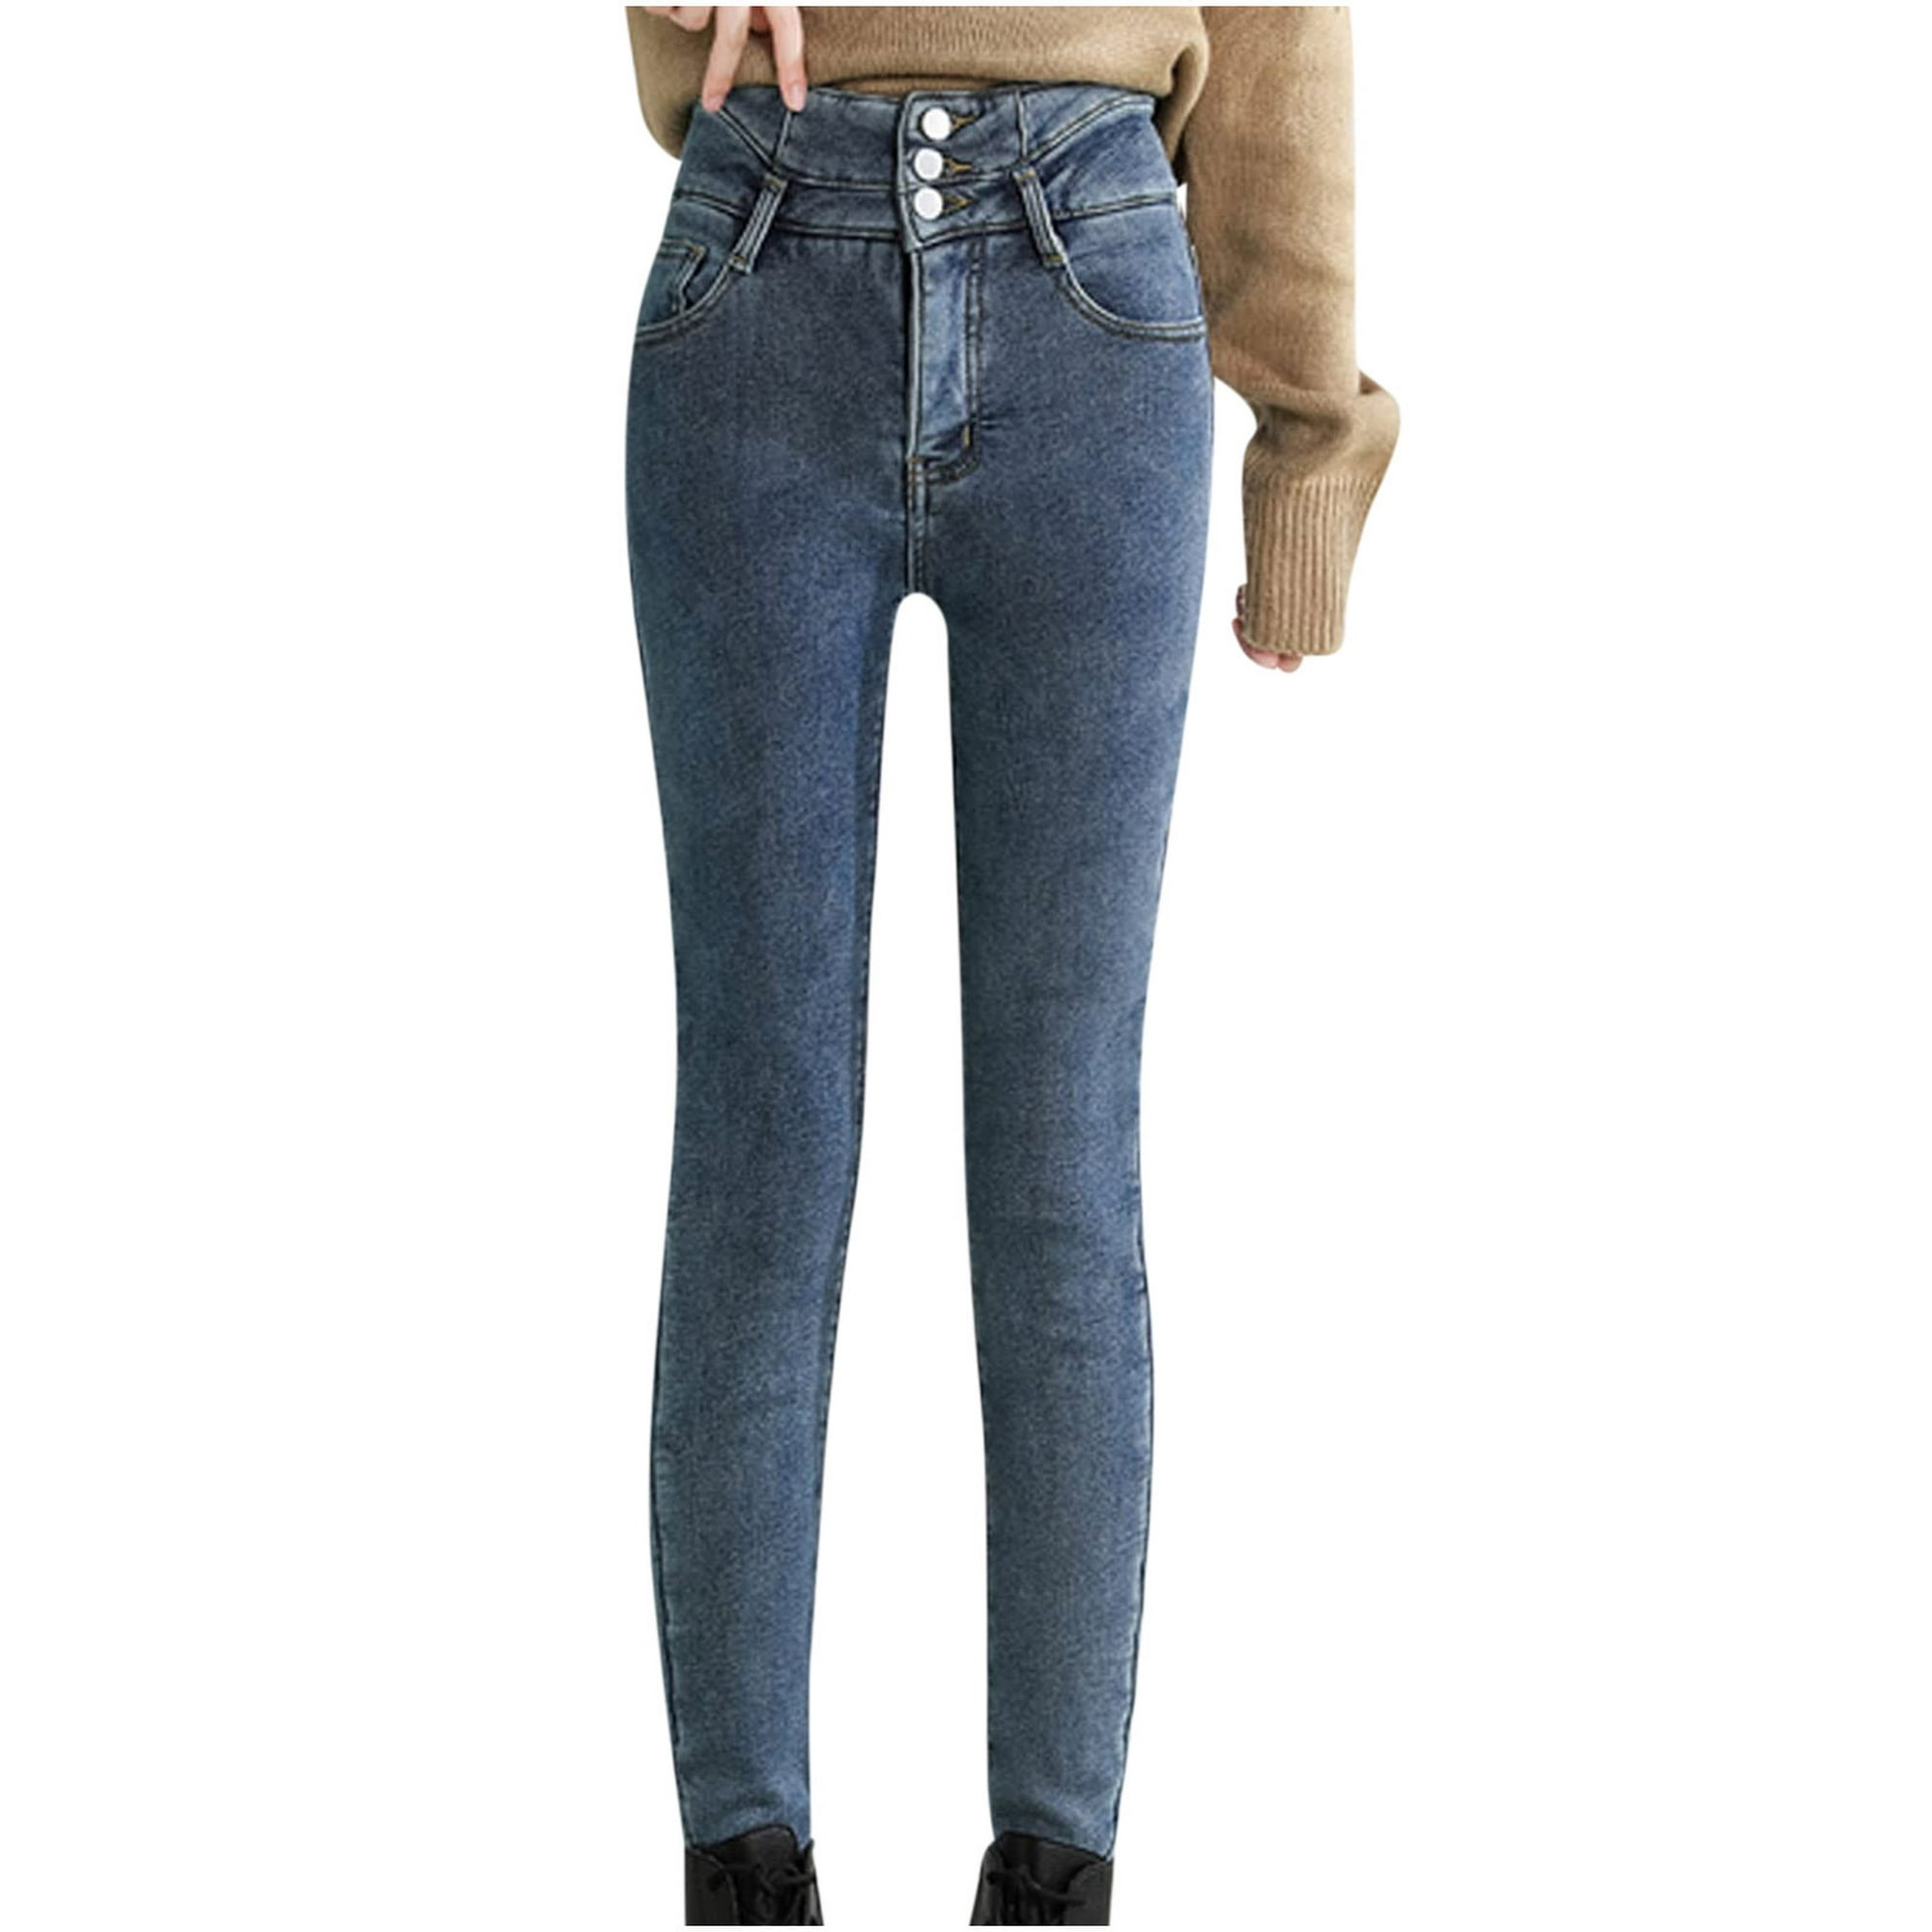 Pantalones Vaqueros Cálidos Para Mujer De Invierno Jeans Termicos